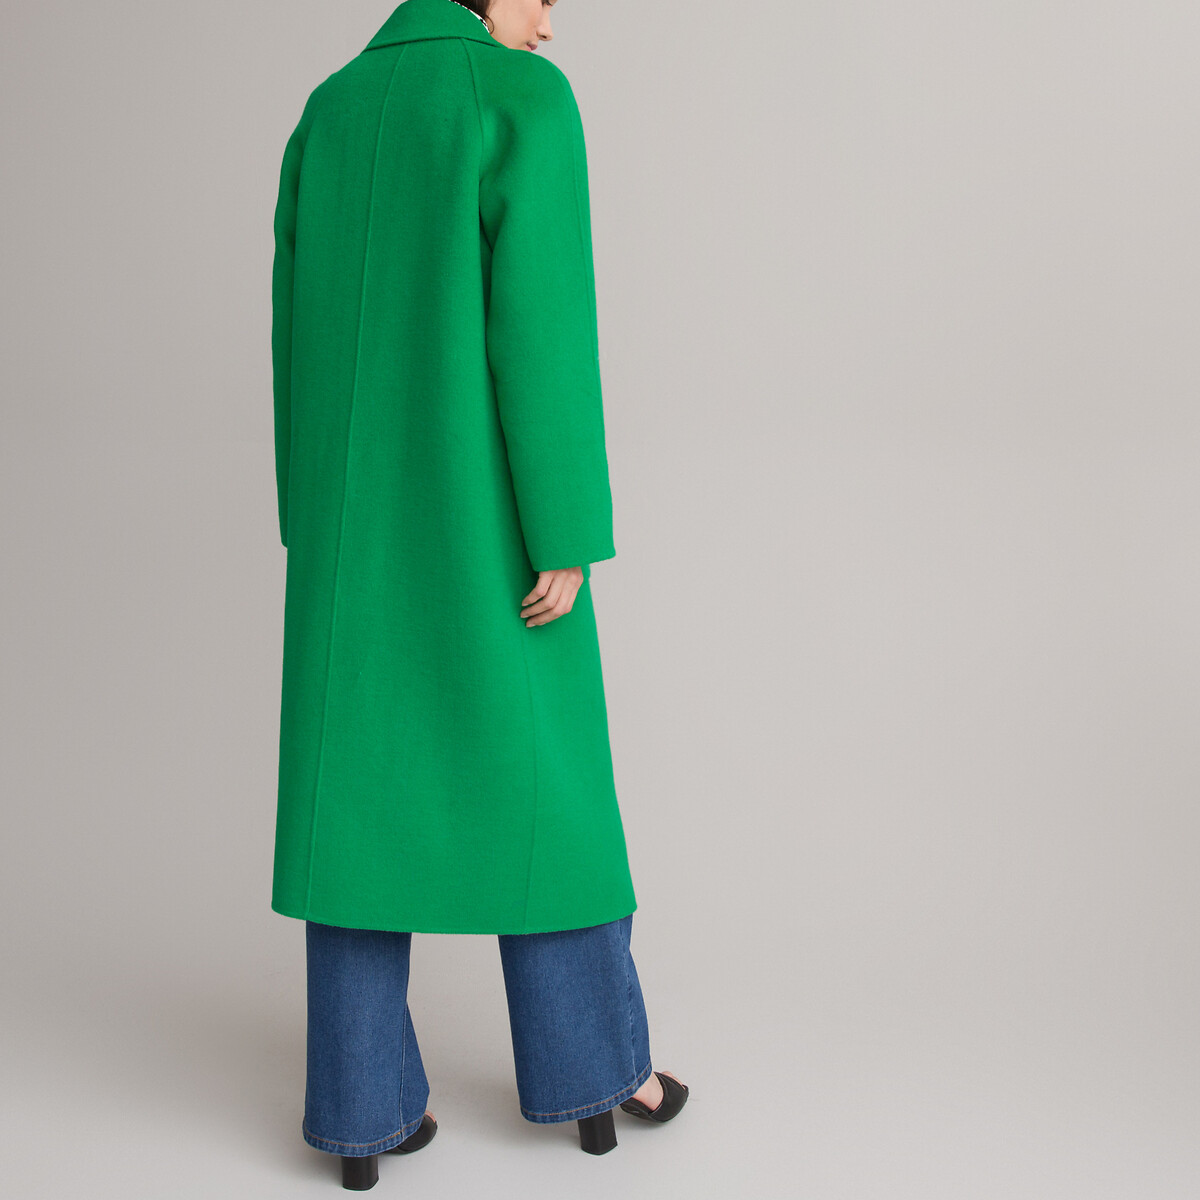 Пальто Из шерстяного драпа 52 (FR) - 58 (RUS) зеленый LaRedoute, размер 52 (FR) - 58 (RUS) Пальто Из шерстяного драпа 52 (FR) - 58 (RUS) зеленый - фото 4